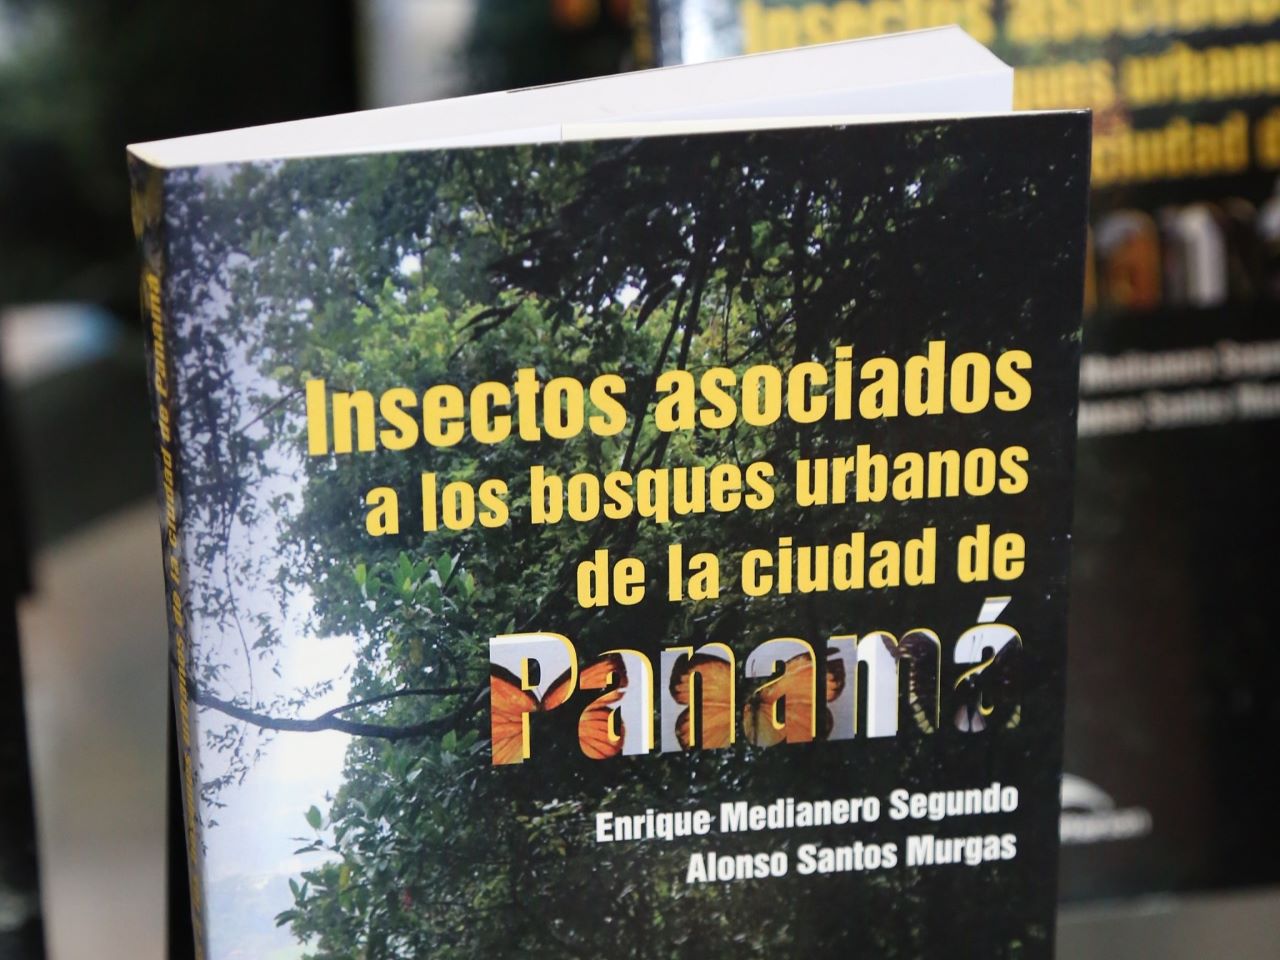 Publican el primer ‘inventario’ de insectos de los bosques urbanos de la ciudad